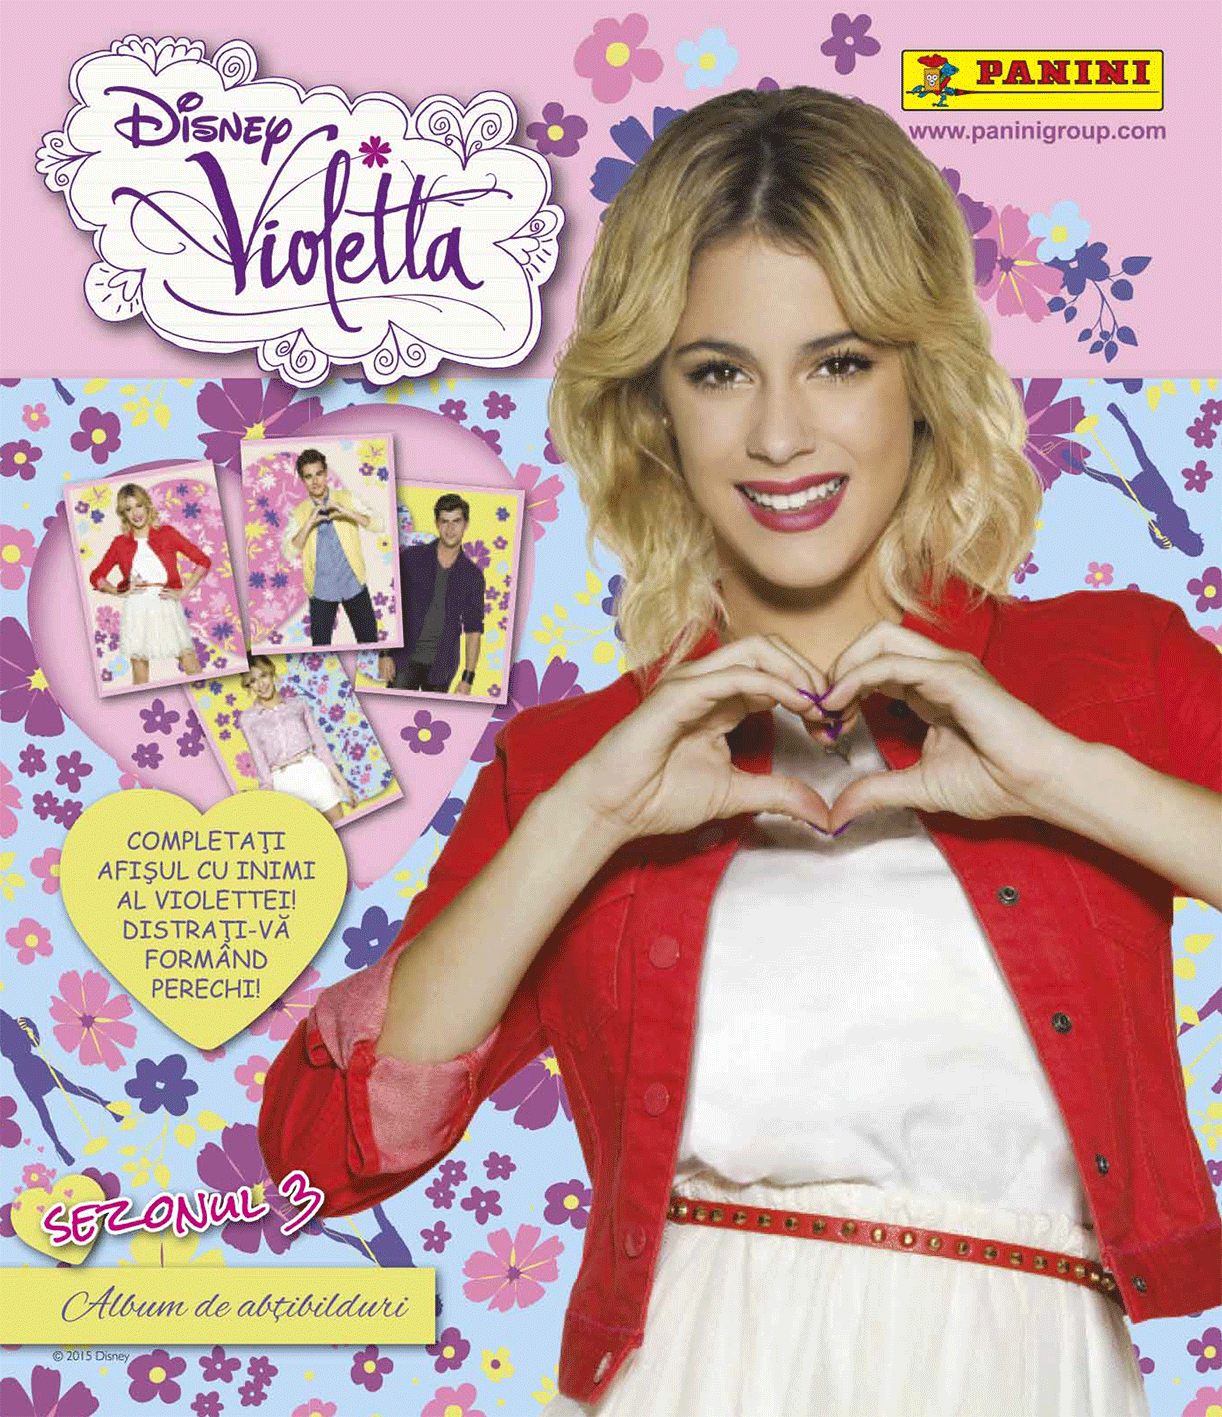 Desene Cu Violeta Sezonul 2 In Romana Castigatori concurs Newsletter: Aboneaza-te in luna iulie si poti